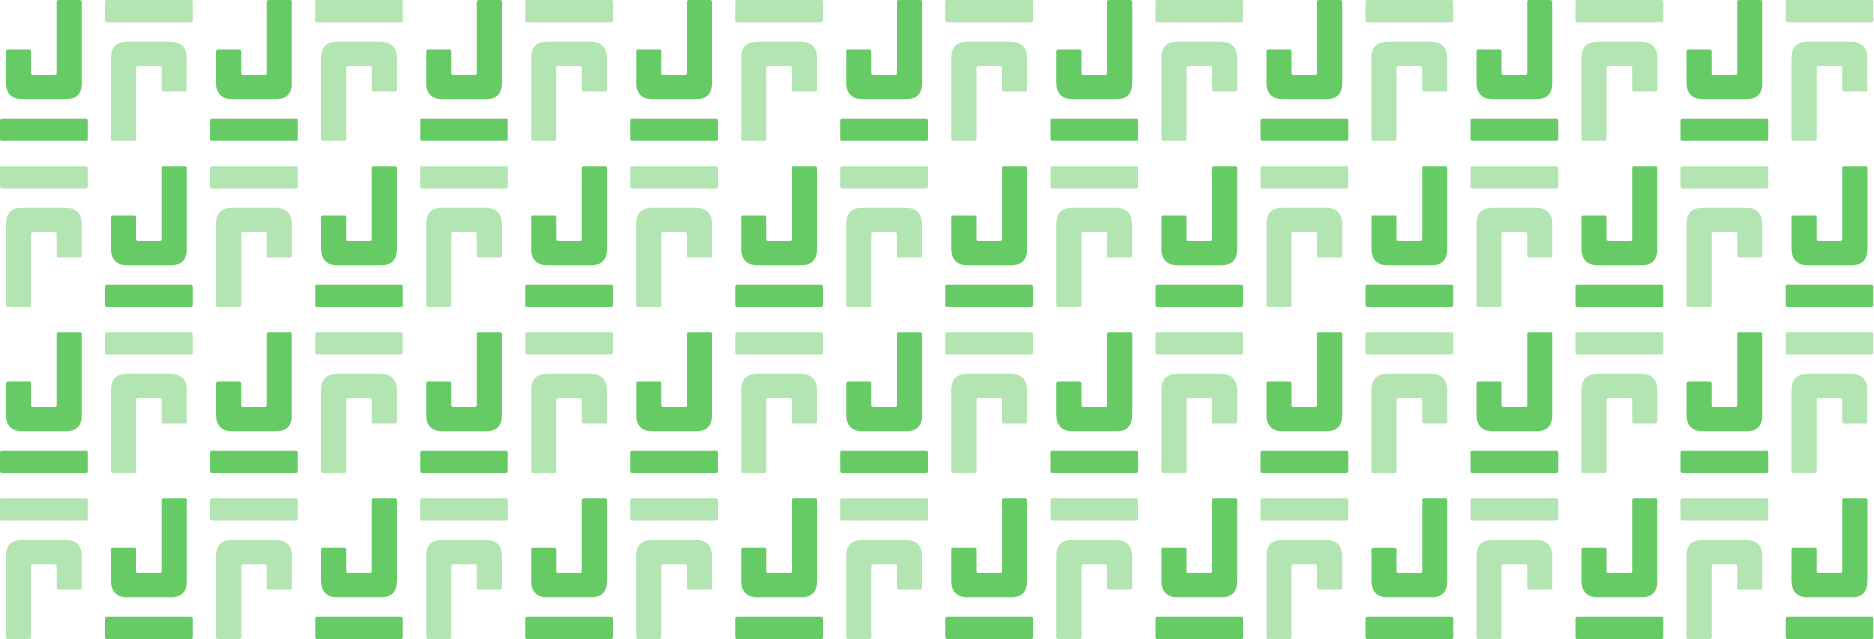 jibe-logo-pattern